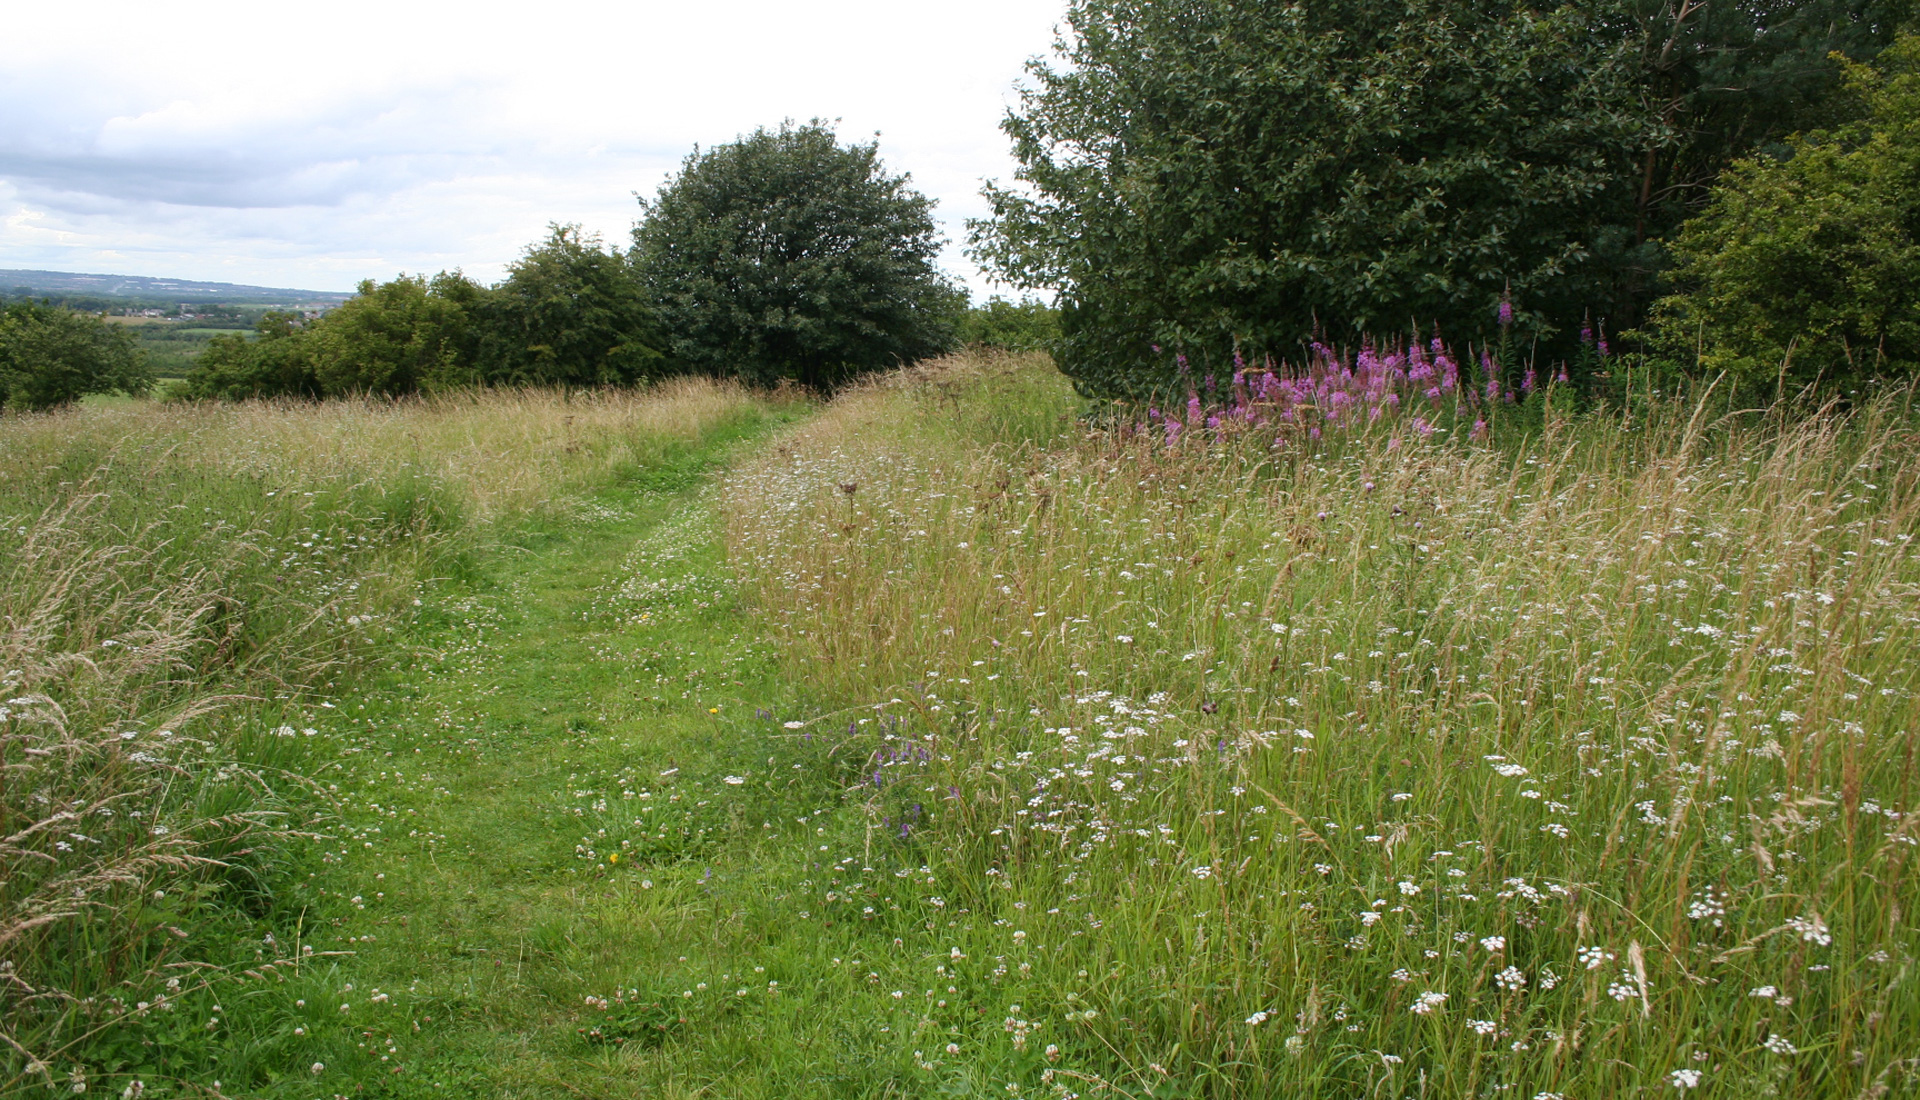 A footpath through a field.